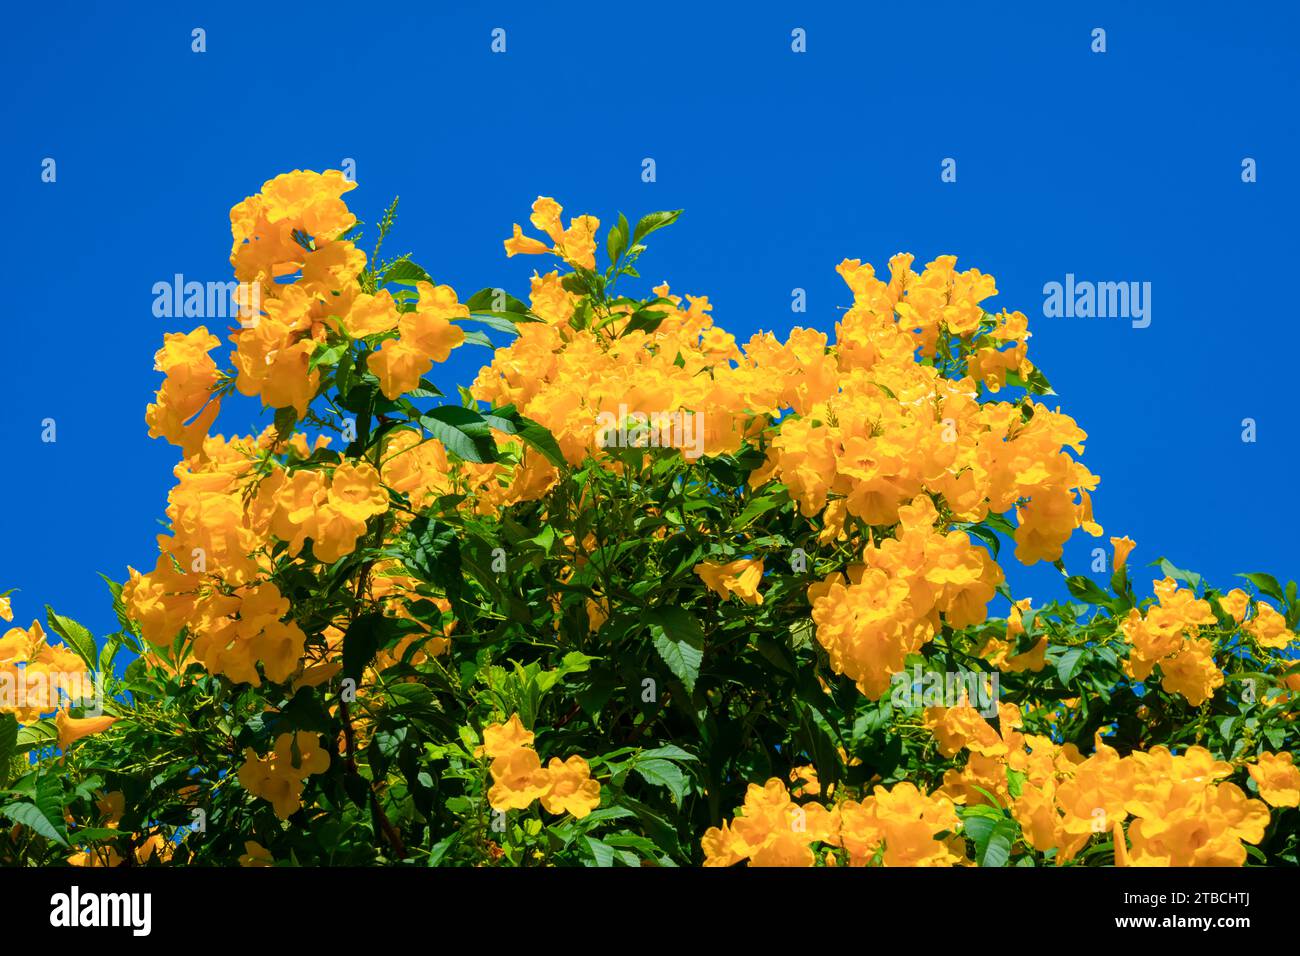 Fleurs jaunes, Tecoma stans, cloche jaune, vigne trompette, floraison dans un jardin sur ciel bleu. Banque D'Images